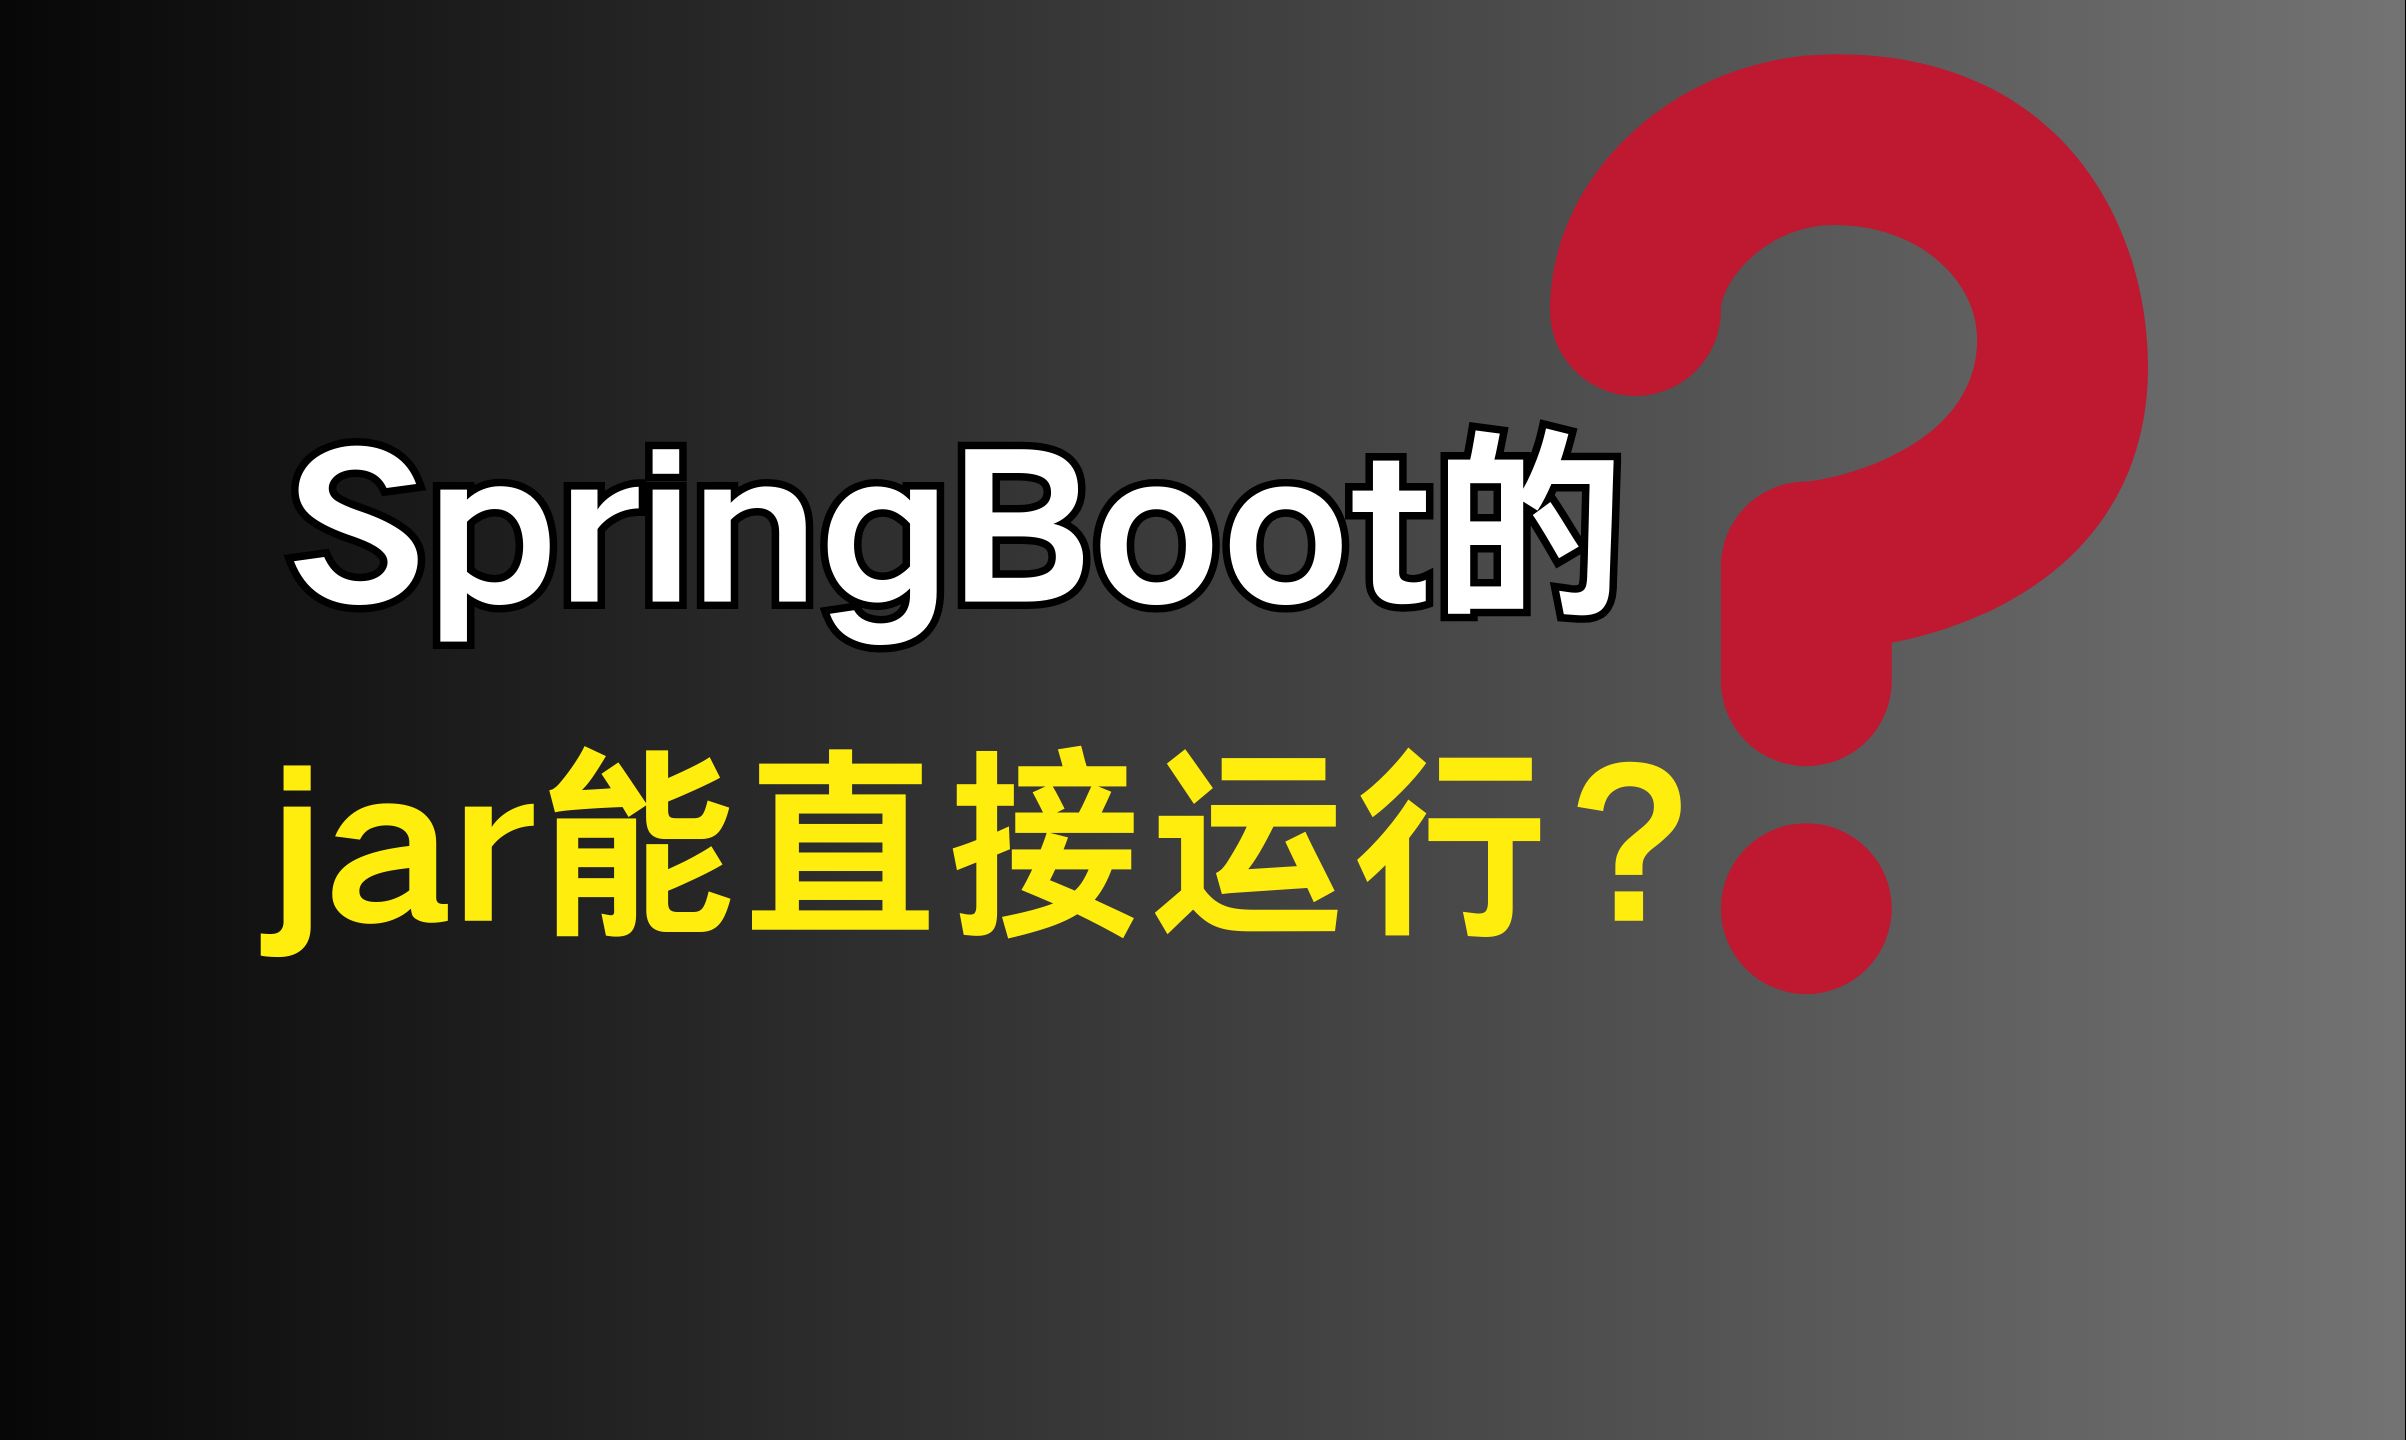 字节二面：为什么SpringBoot的jar可以直接运行？？？ |  最通俗易懂的一集